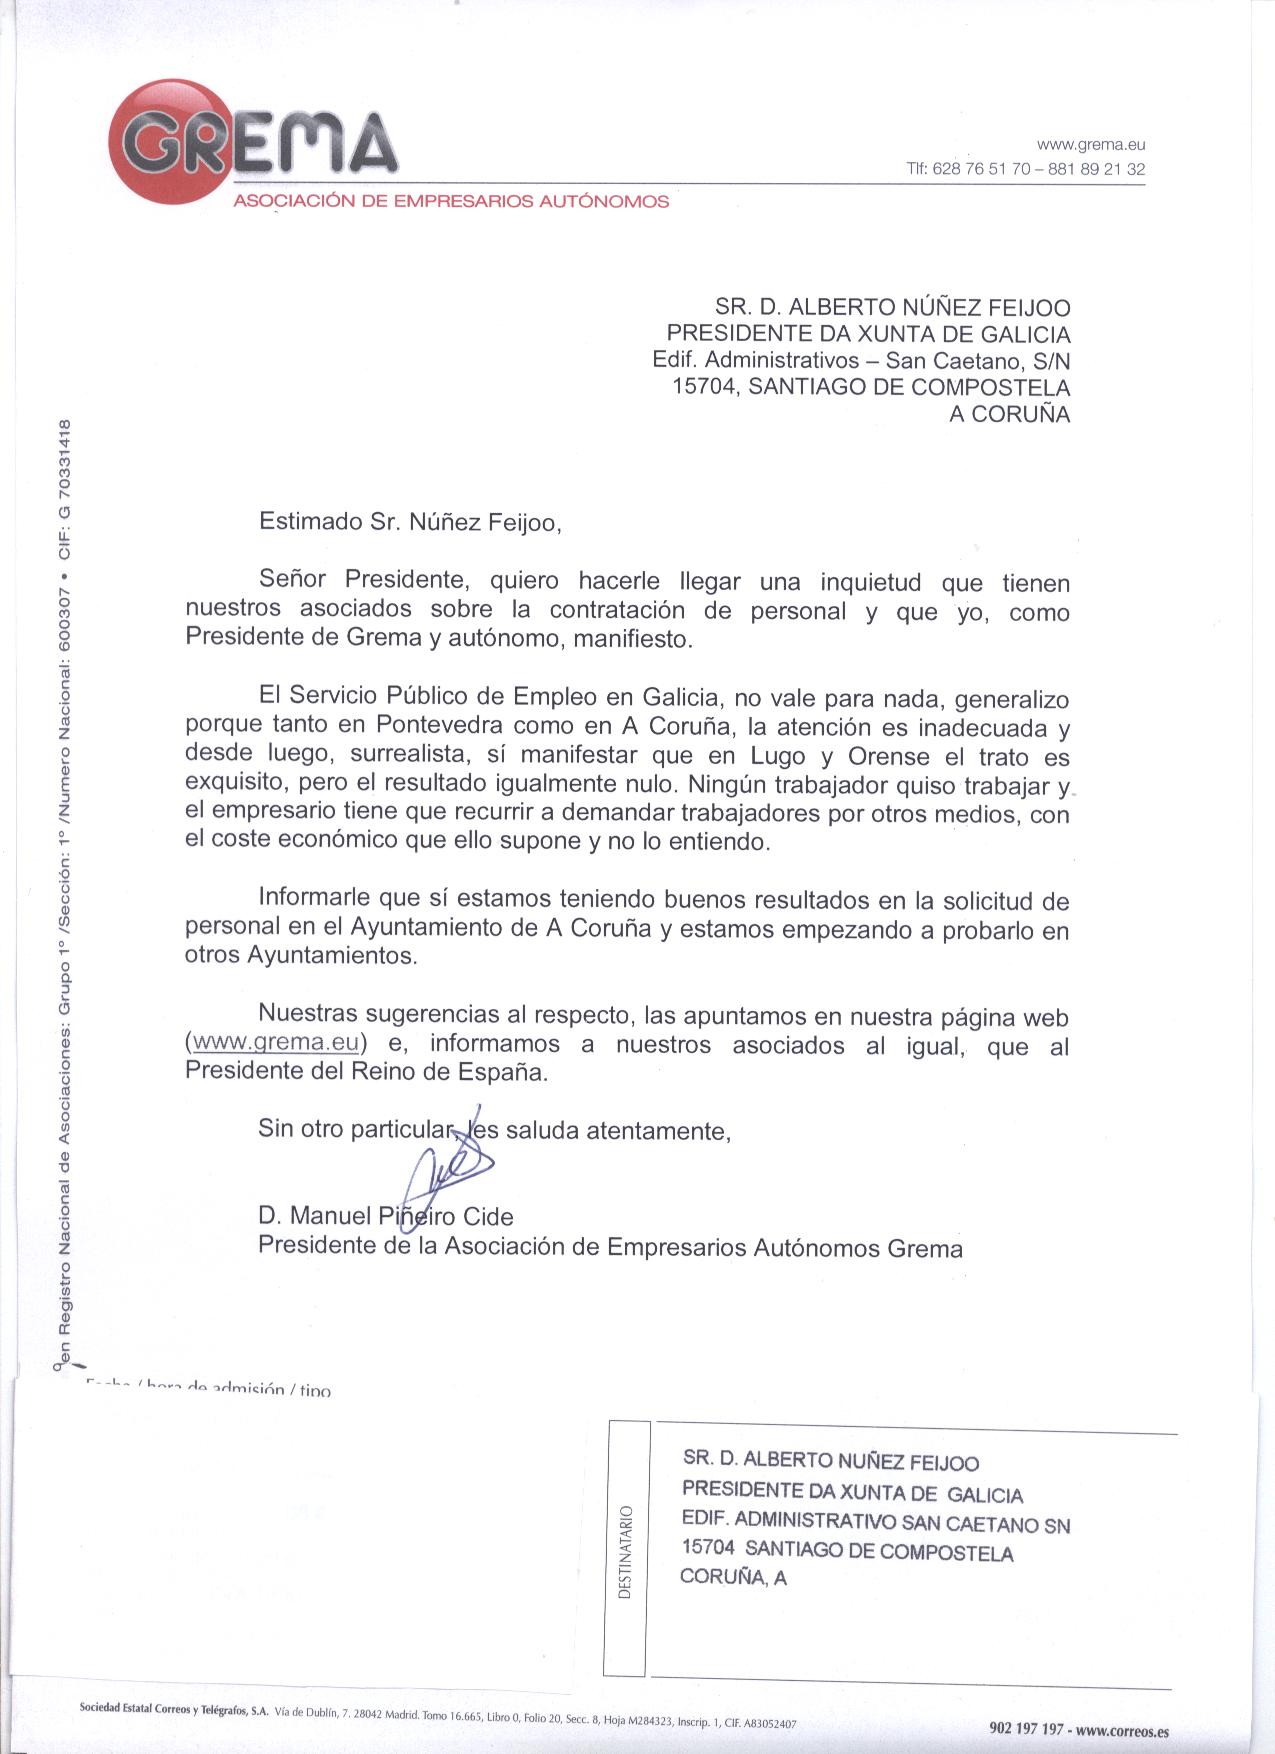 Carta al Presidente de la Xunta de Galicia